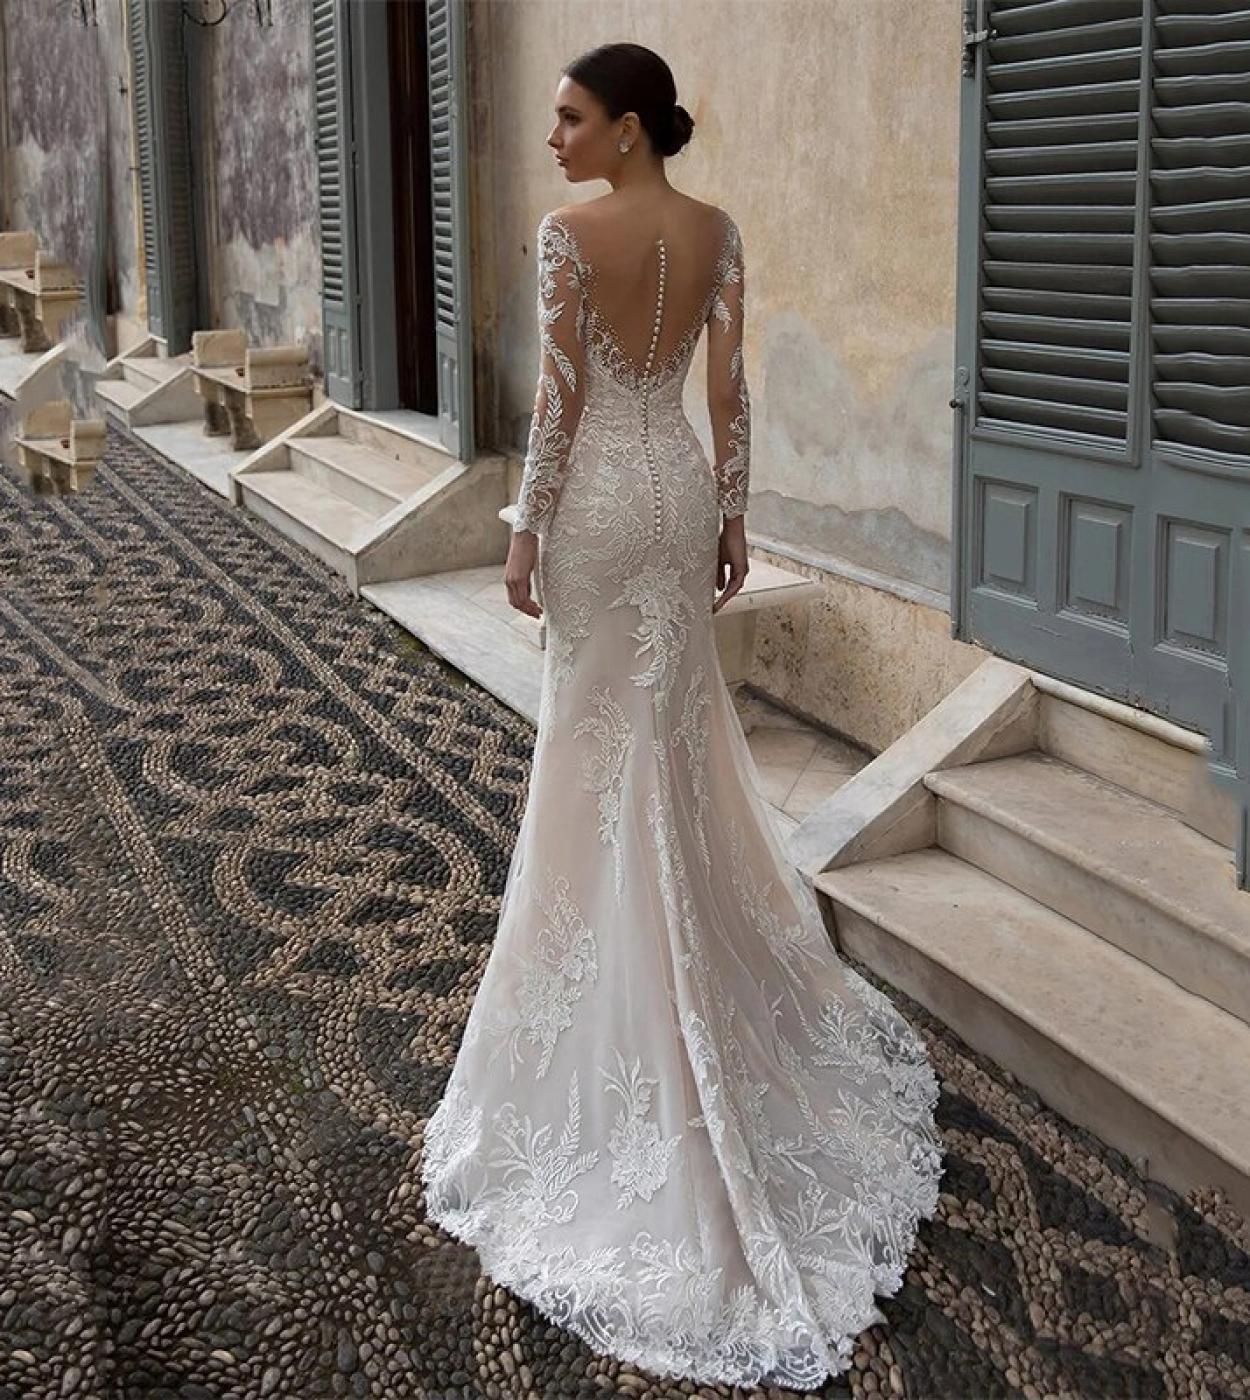 https://d3en8d2cl9etnr.cloudfront.net/893906-large_default/ladies-v-neck-illusion-lace-mermaid-wedding-dress-long-sleeve-applique.jpg